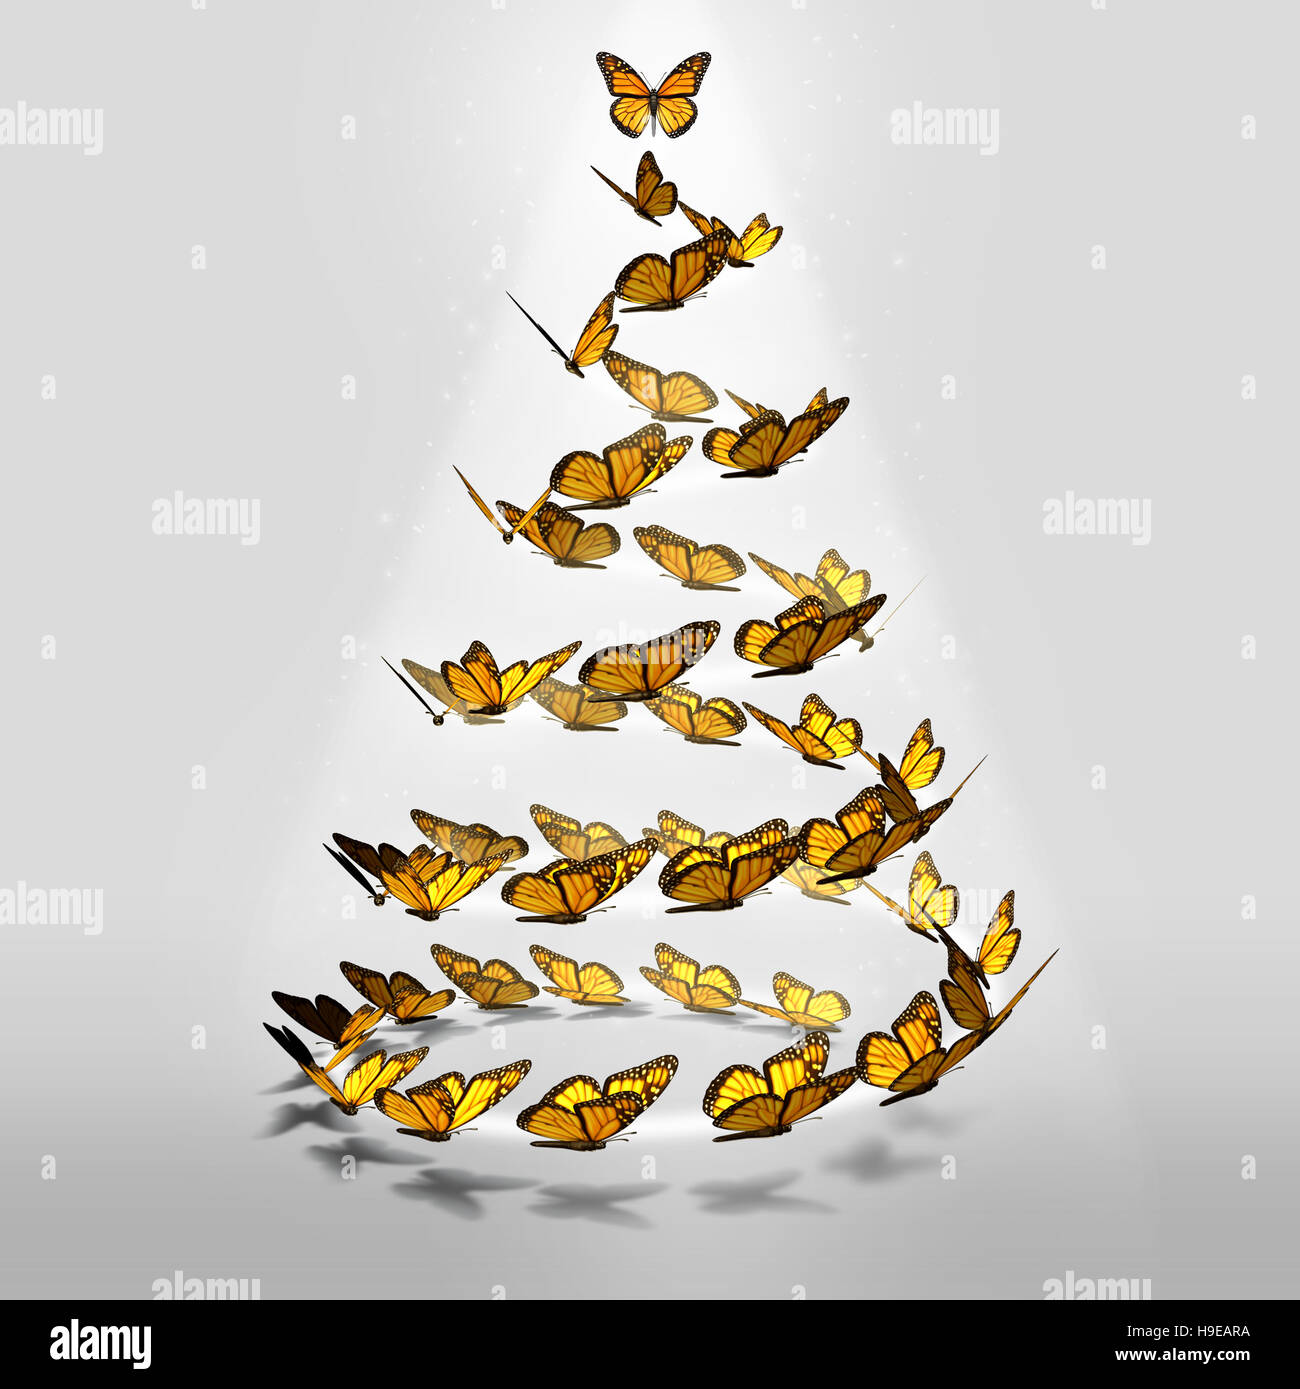 Como un árbol de Navidad de mariposas mágicas vacaciones de invierno en forma de grupo de mariposas como una perenne pino como un símbolo de temporada festiva de la esperanza y de la alegría en Foto de stock